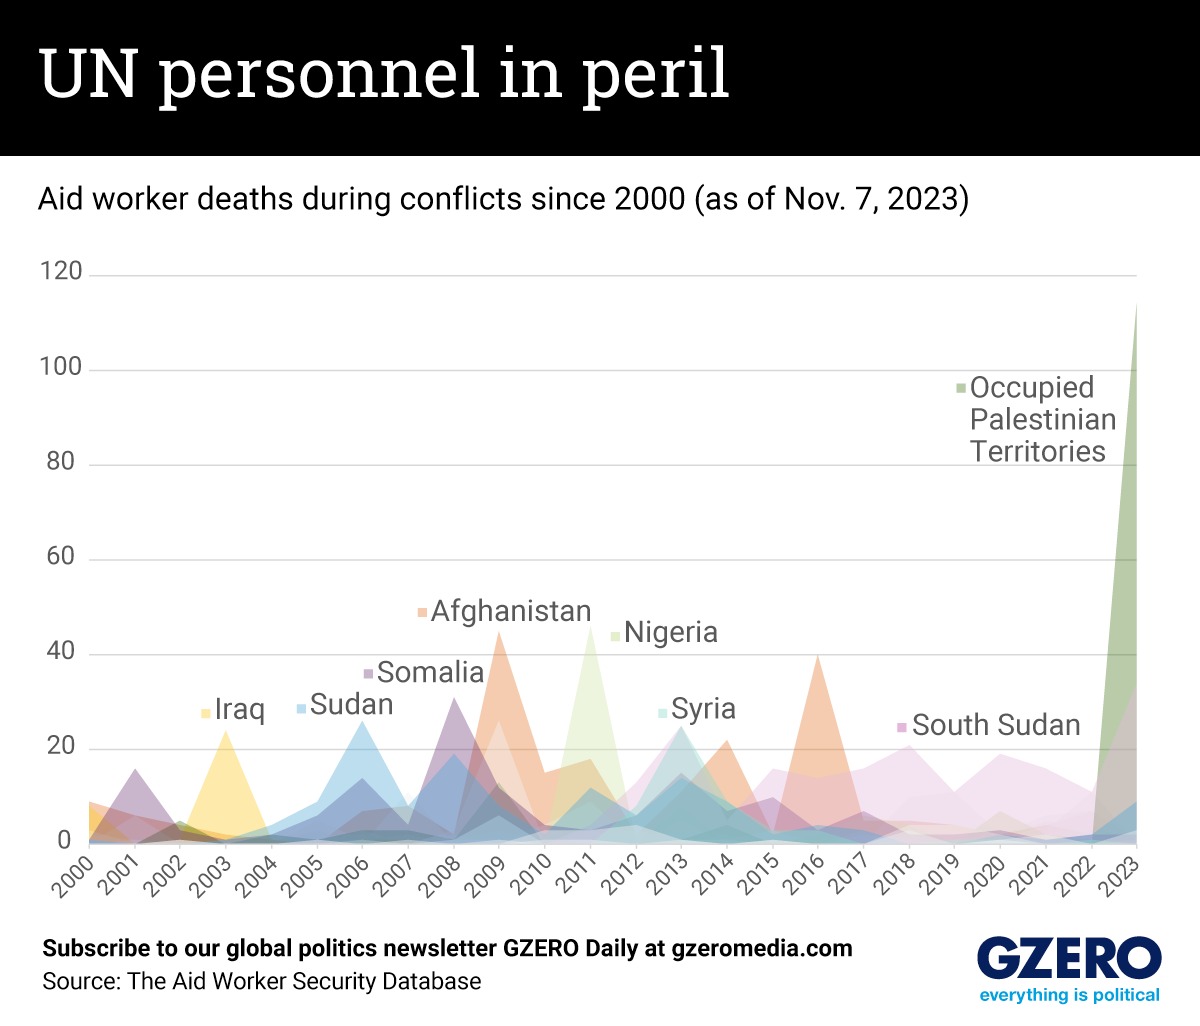 The Graphic Truth: UN personnel in peril